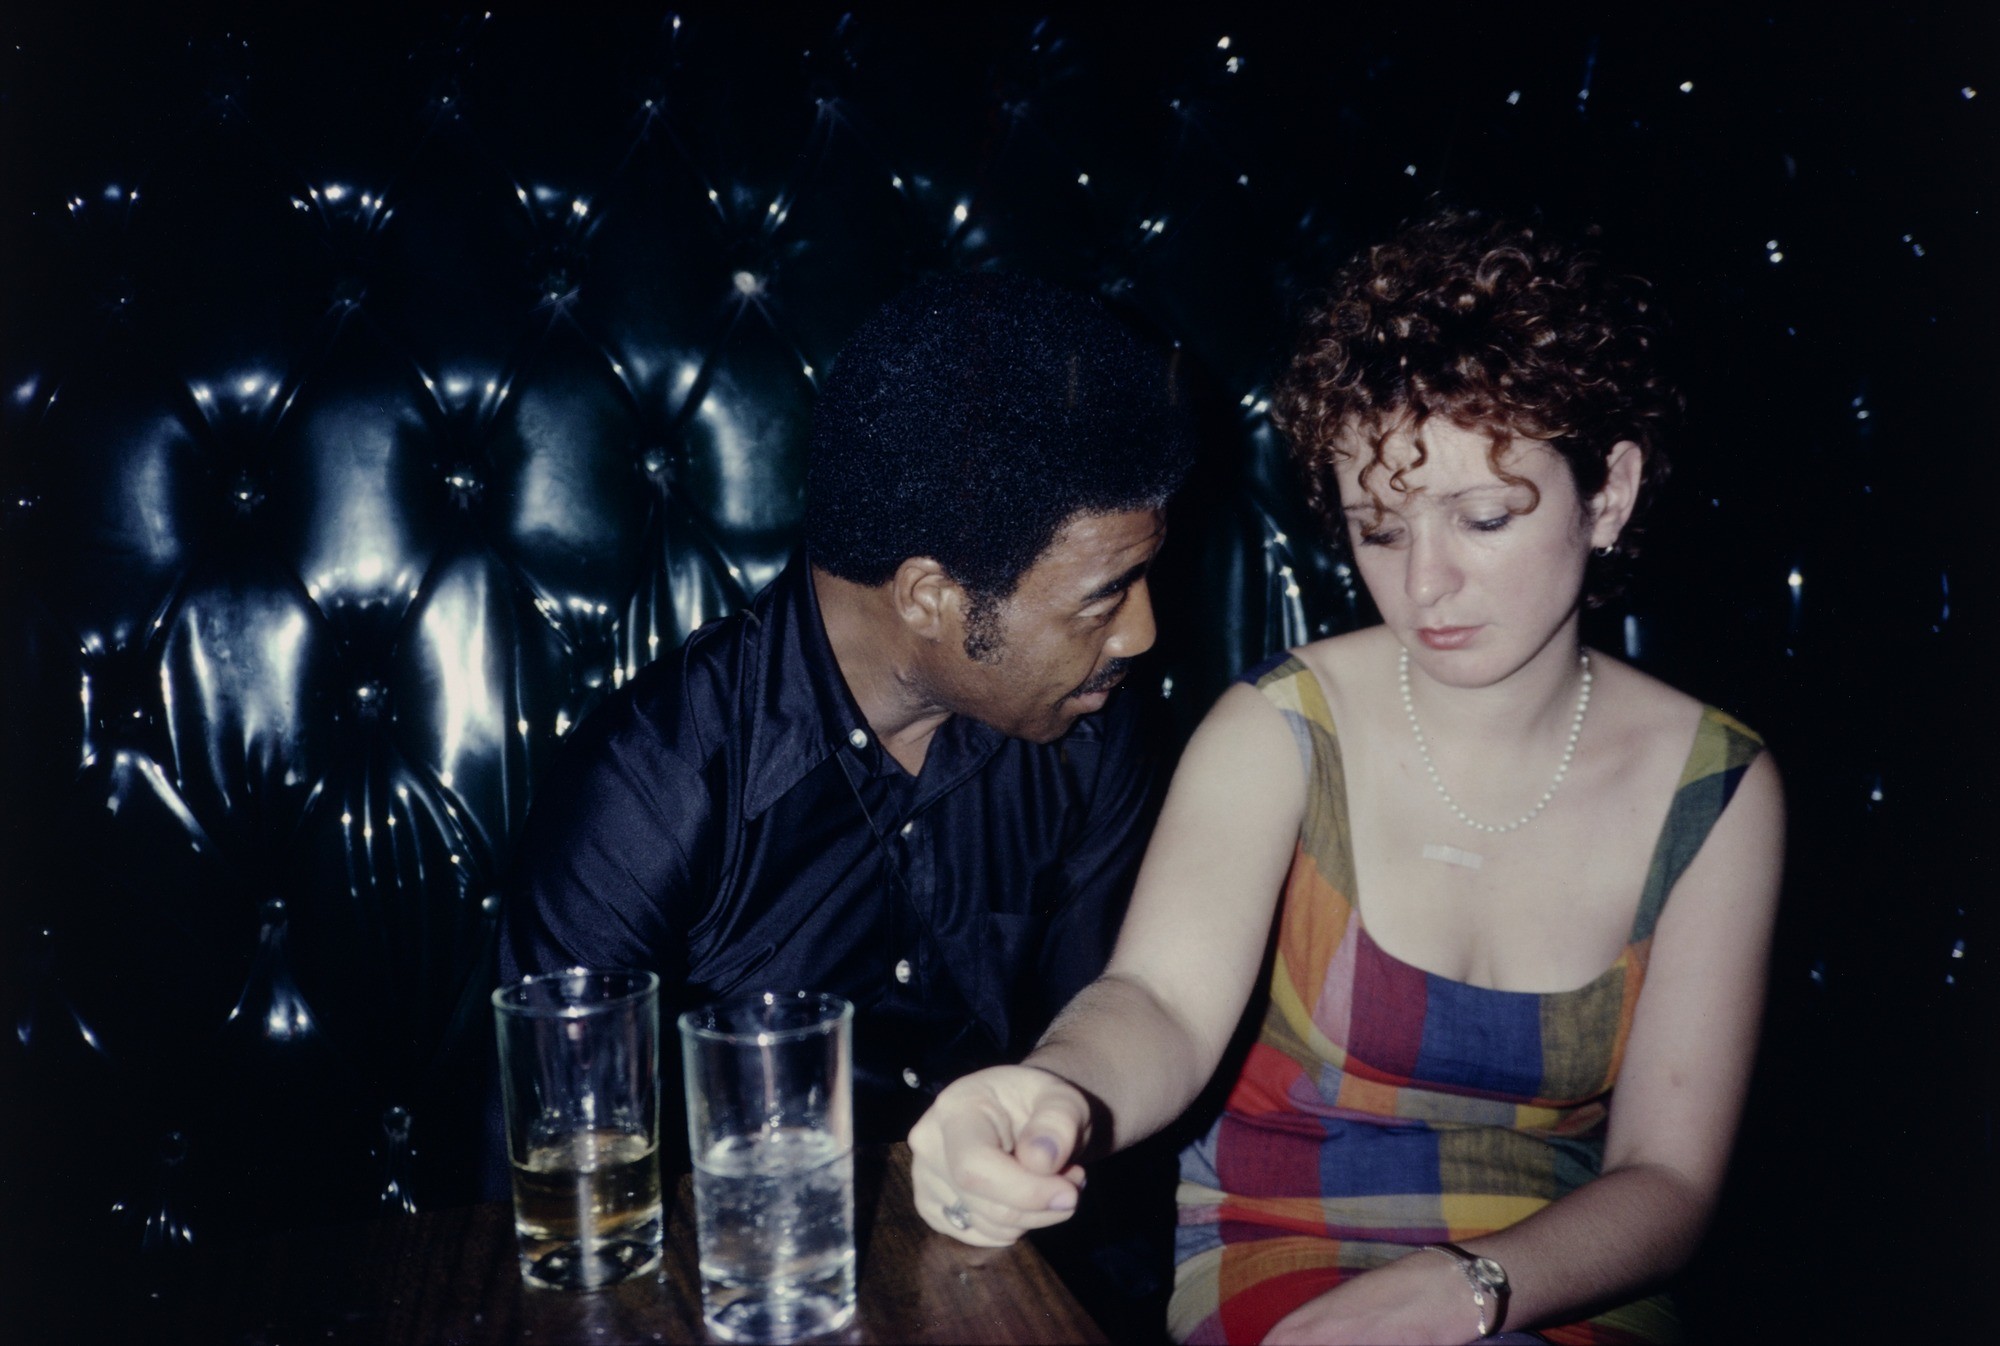 Базз и Нан в After Hours, Нью-Йорк, 1980. Автор Нан Голдин